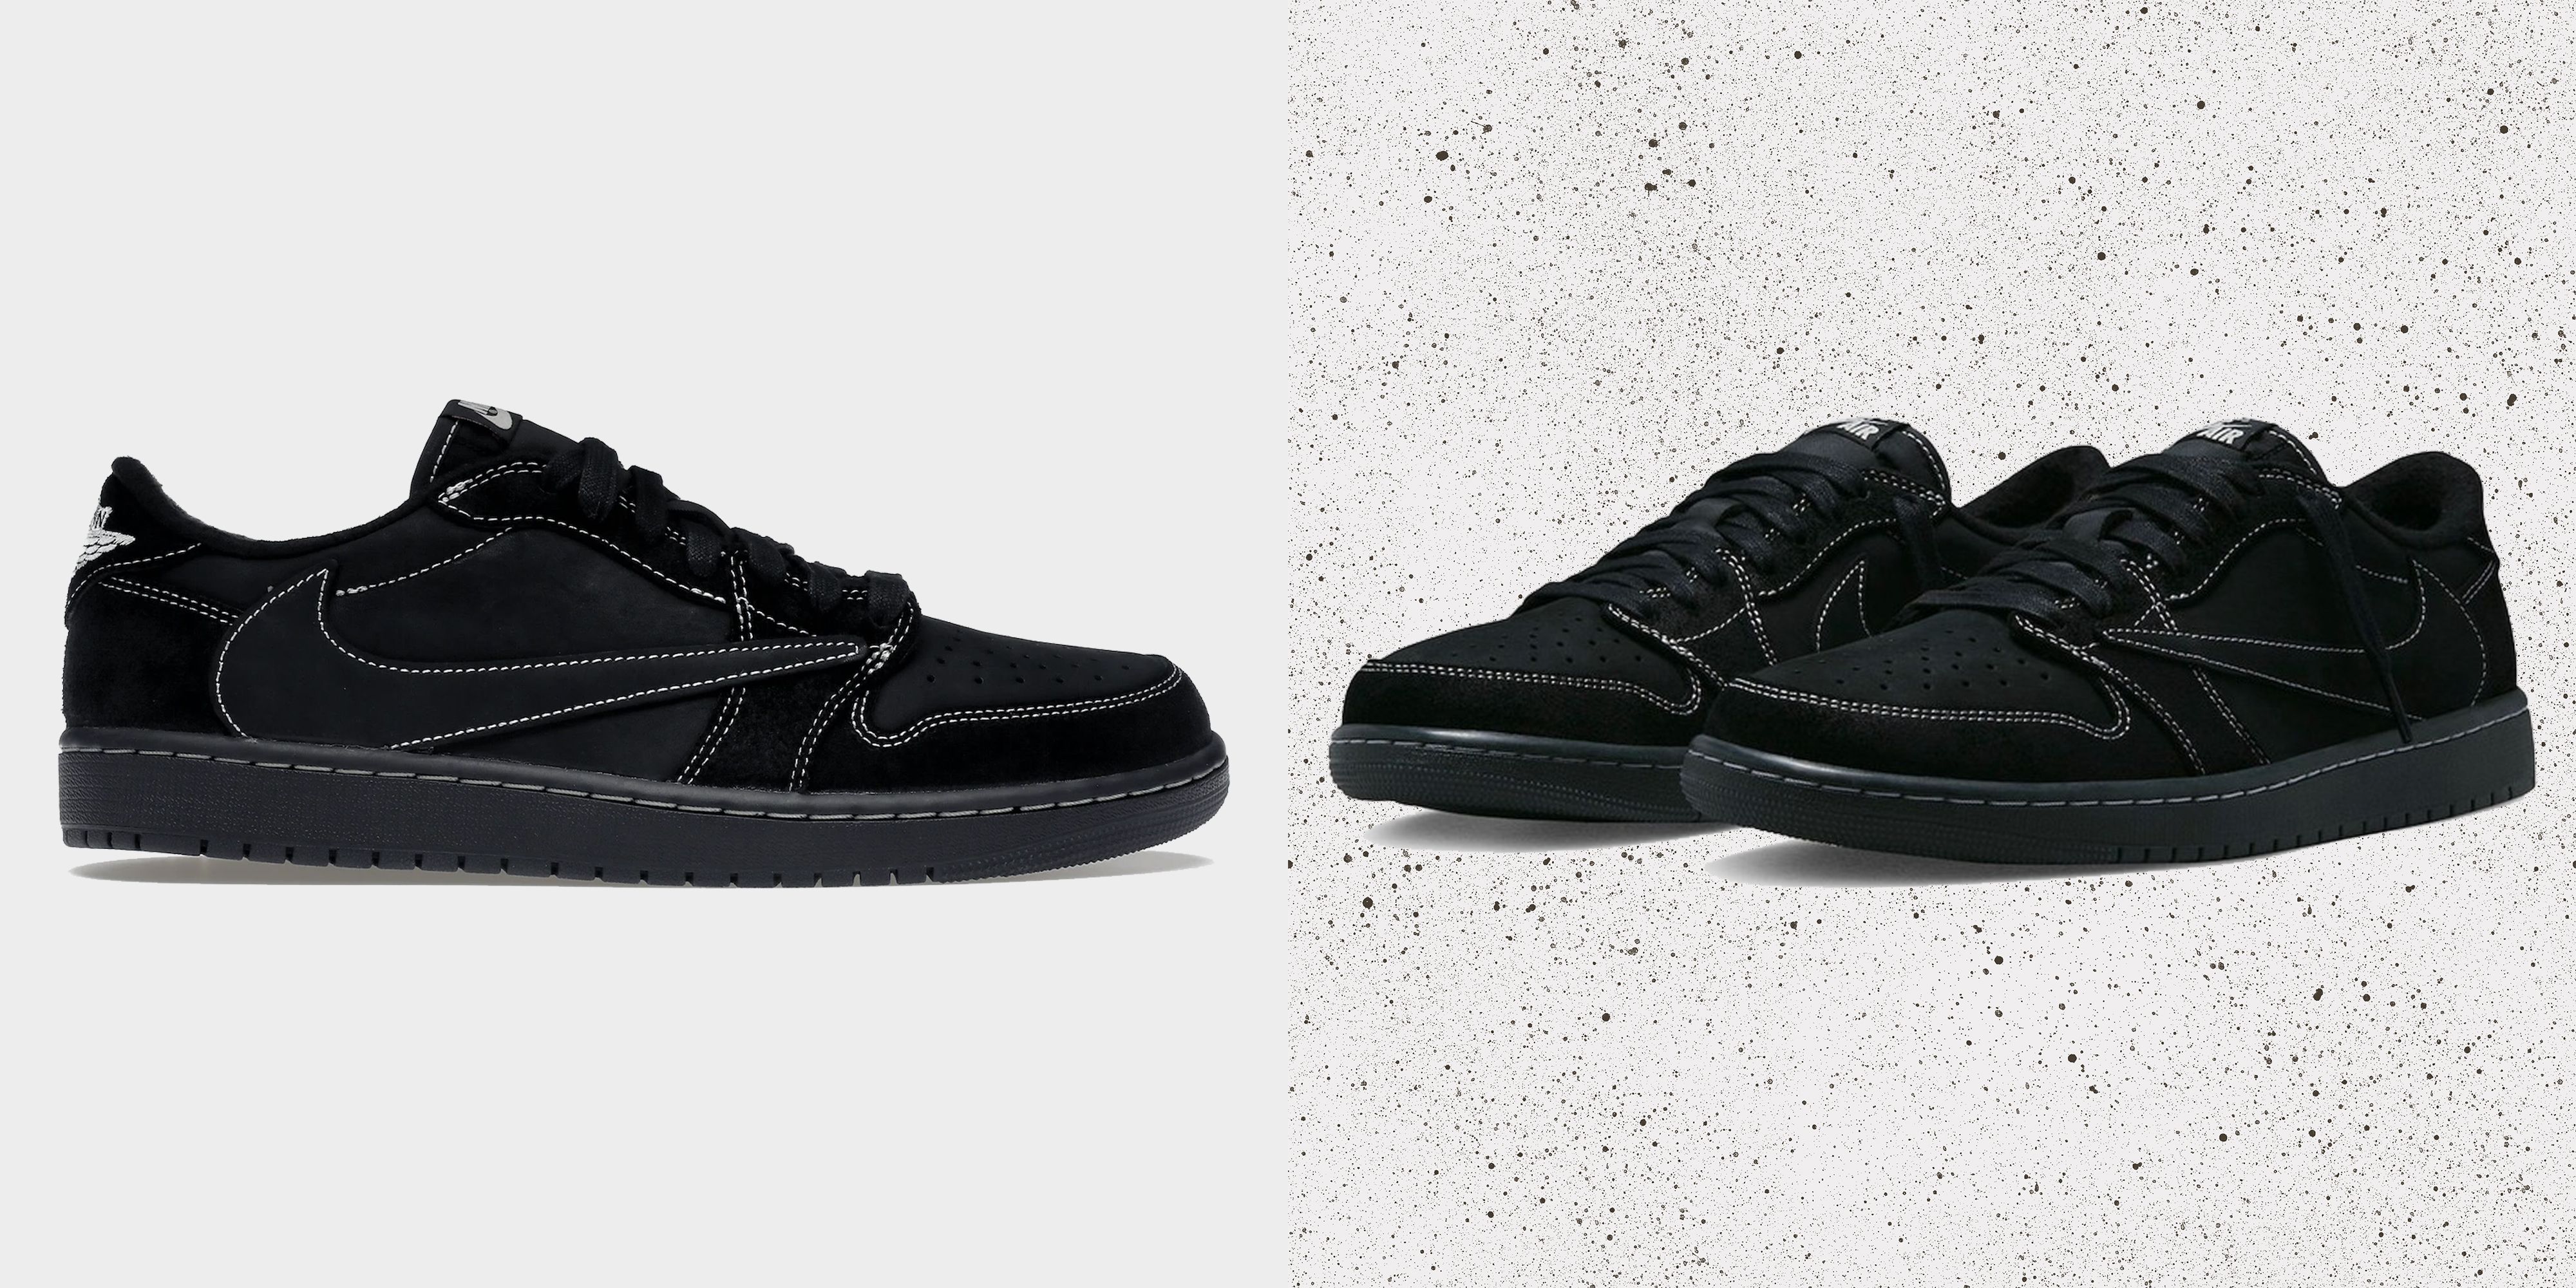 It's Official! Travis Scott's Nike Mac Attack is Coming - Sneaker Freaker